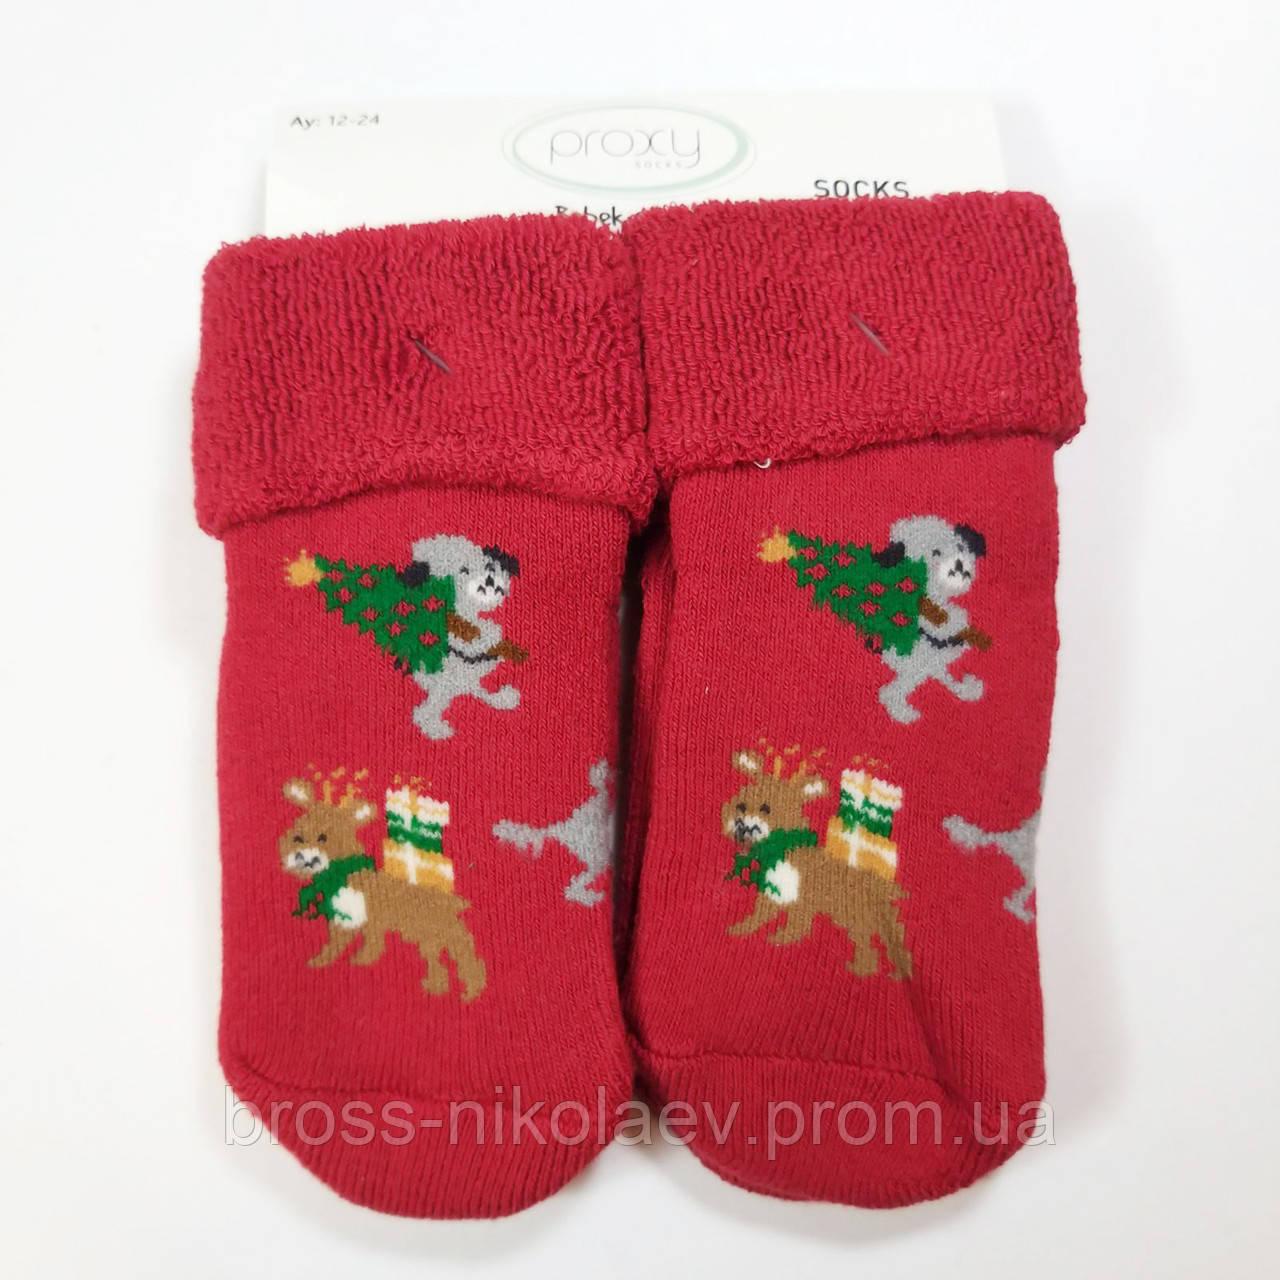 Дитячі махрові шкарпетки 0-6 6-12 міс для малюка теплі зимові новорічні носки махра для новонароджених PROXY